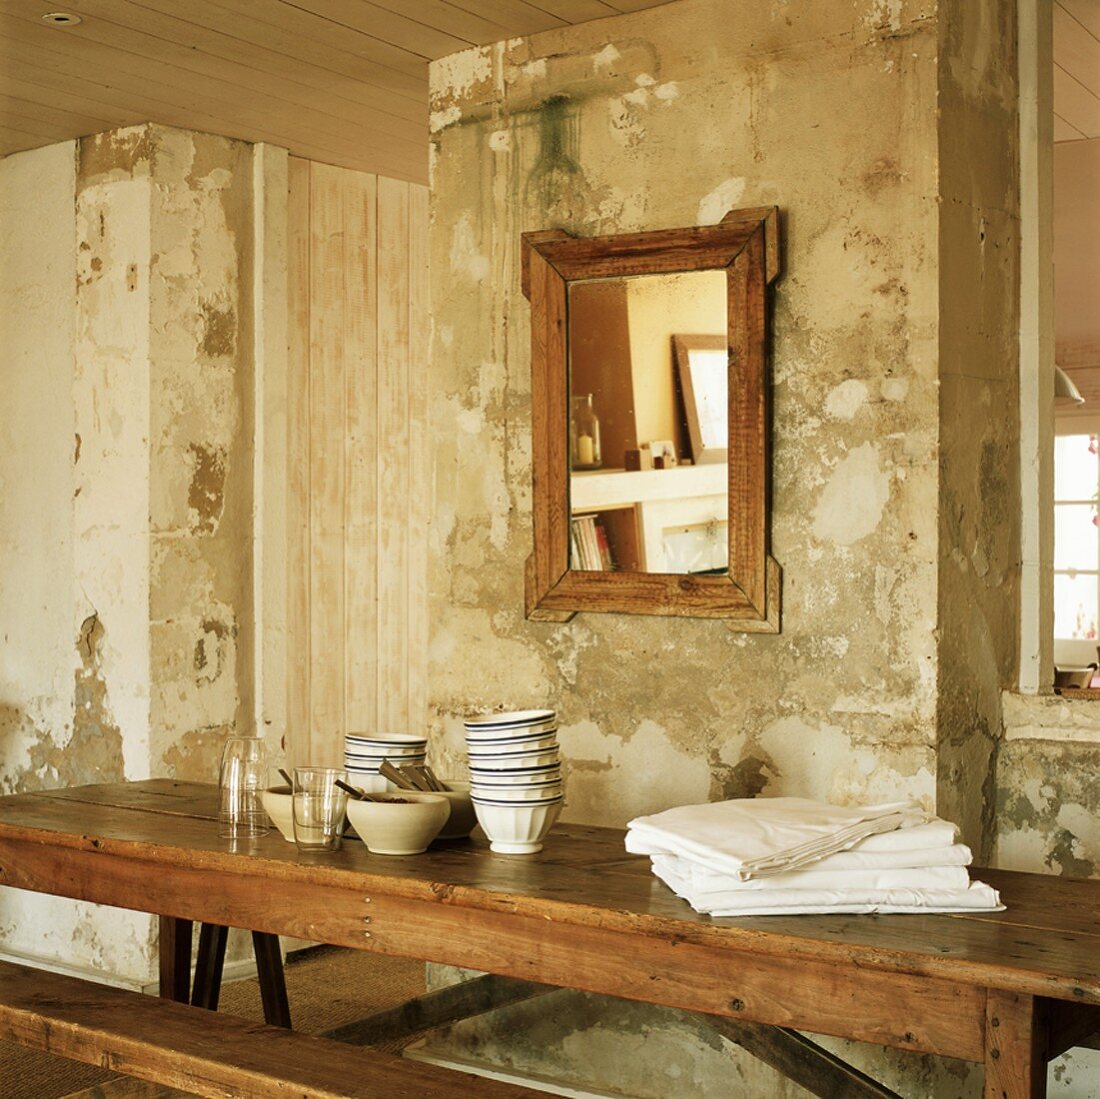 Antiker, rustikaler Holztisch und Spiegel vor einer alten, abgenutzten Wand